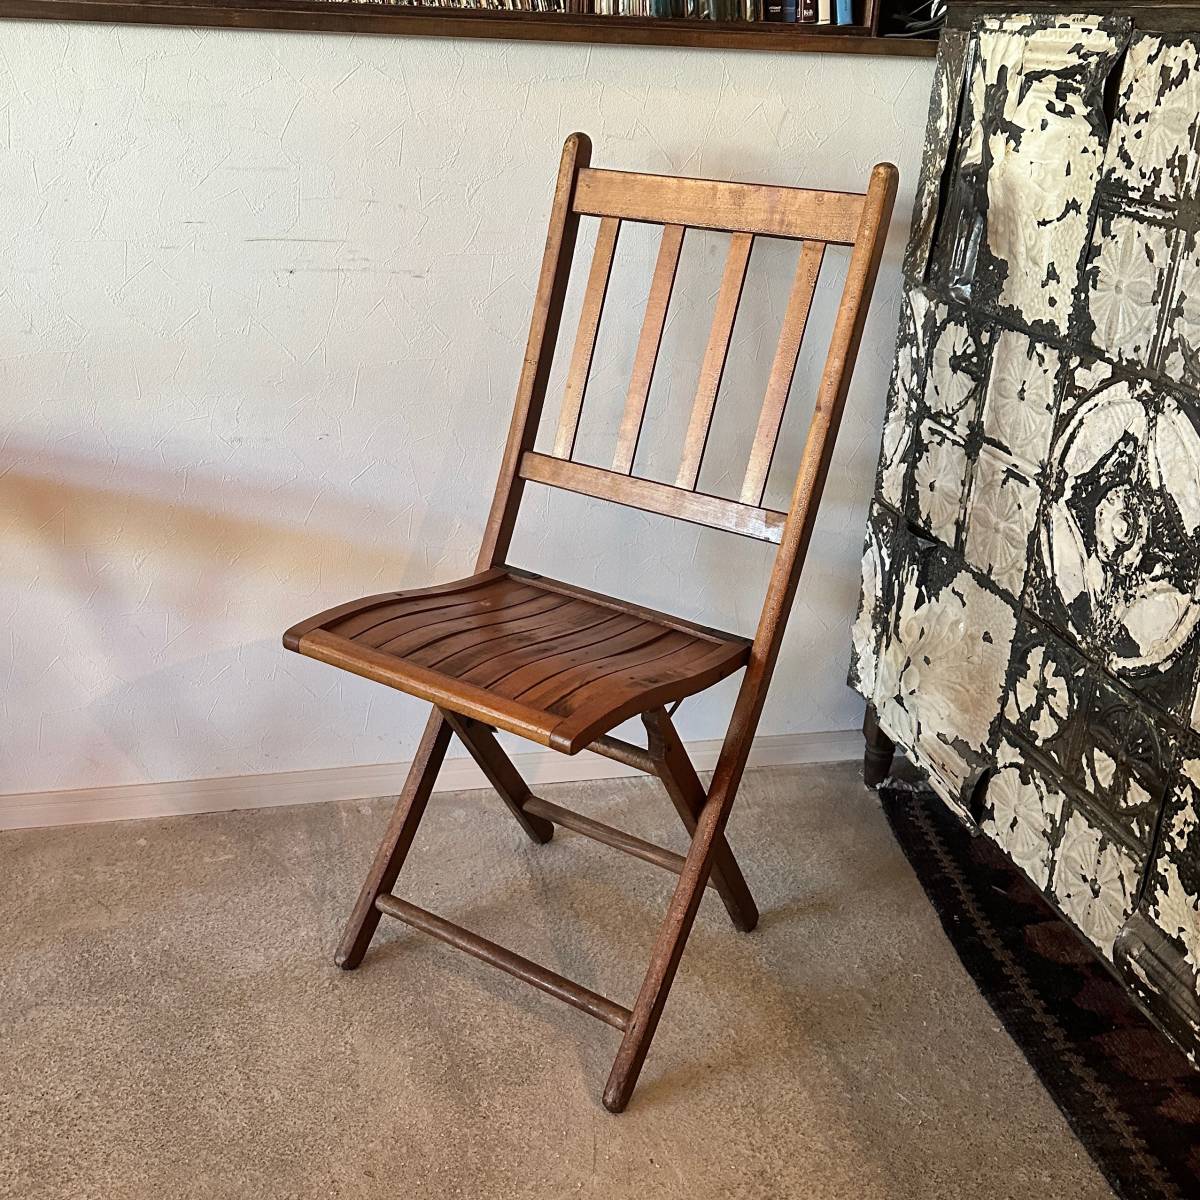 【Vintage】~1940s Folding Chair フォールディングチェア 折り畳み椅子 イス 家具 キャンプ アウトドア ヴィンテージ アンティーク A